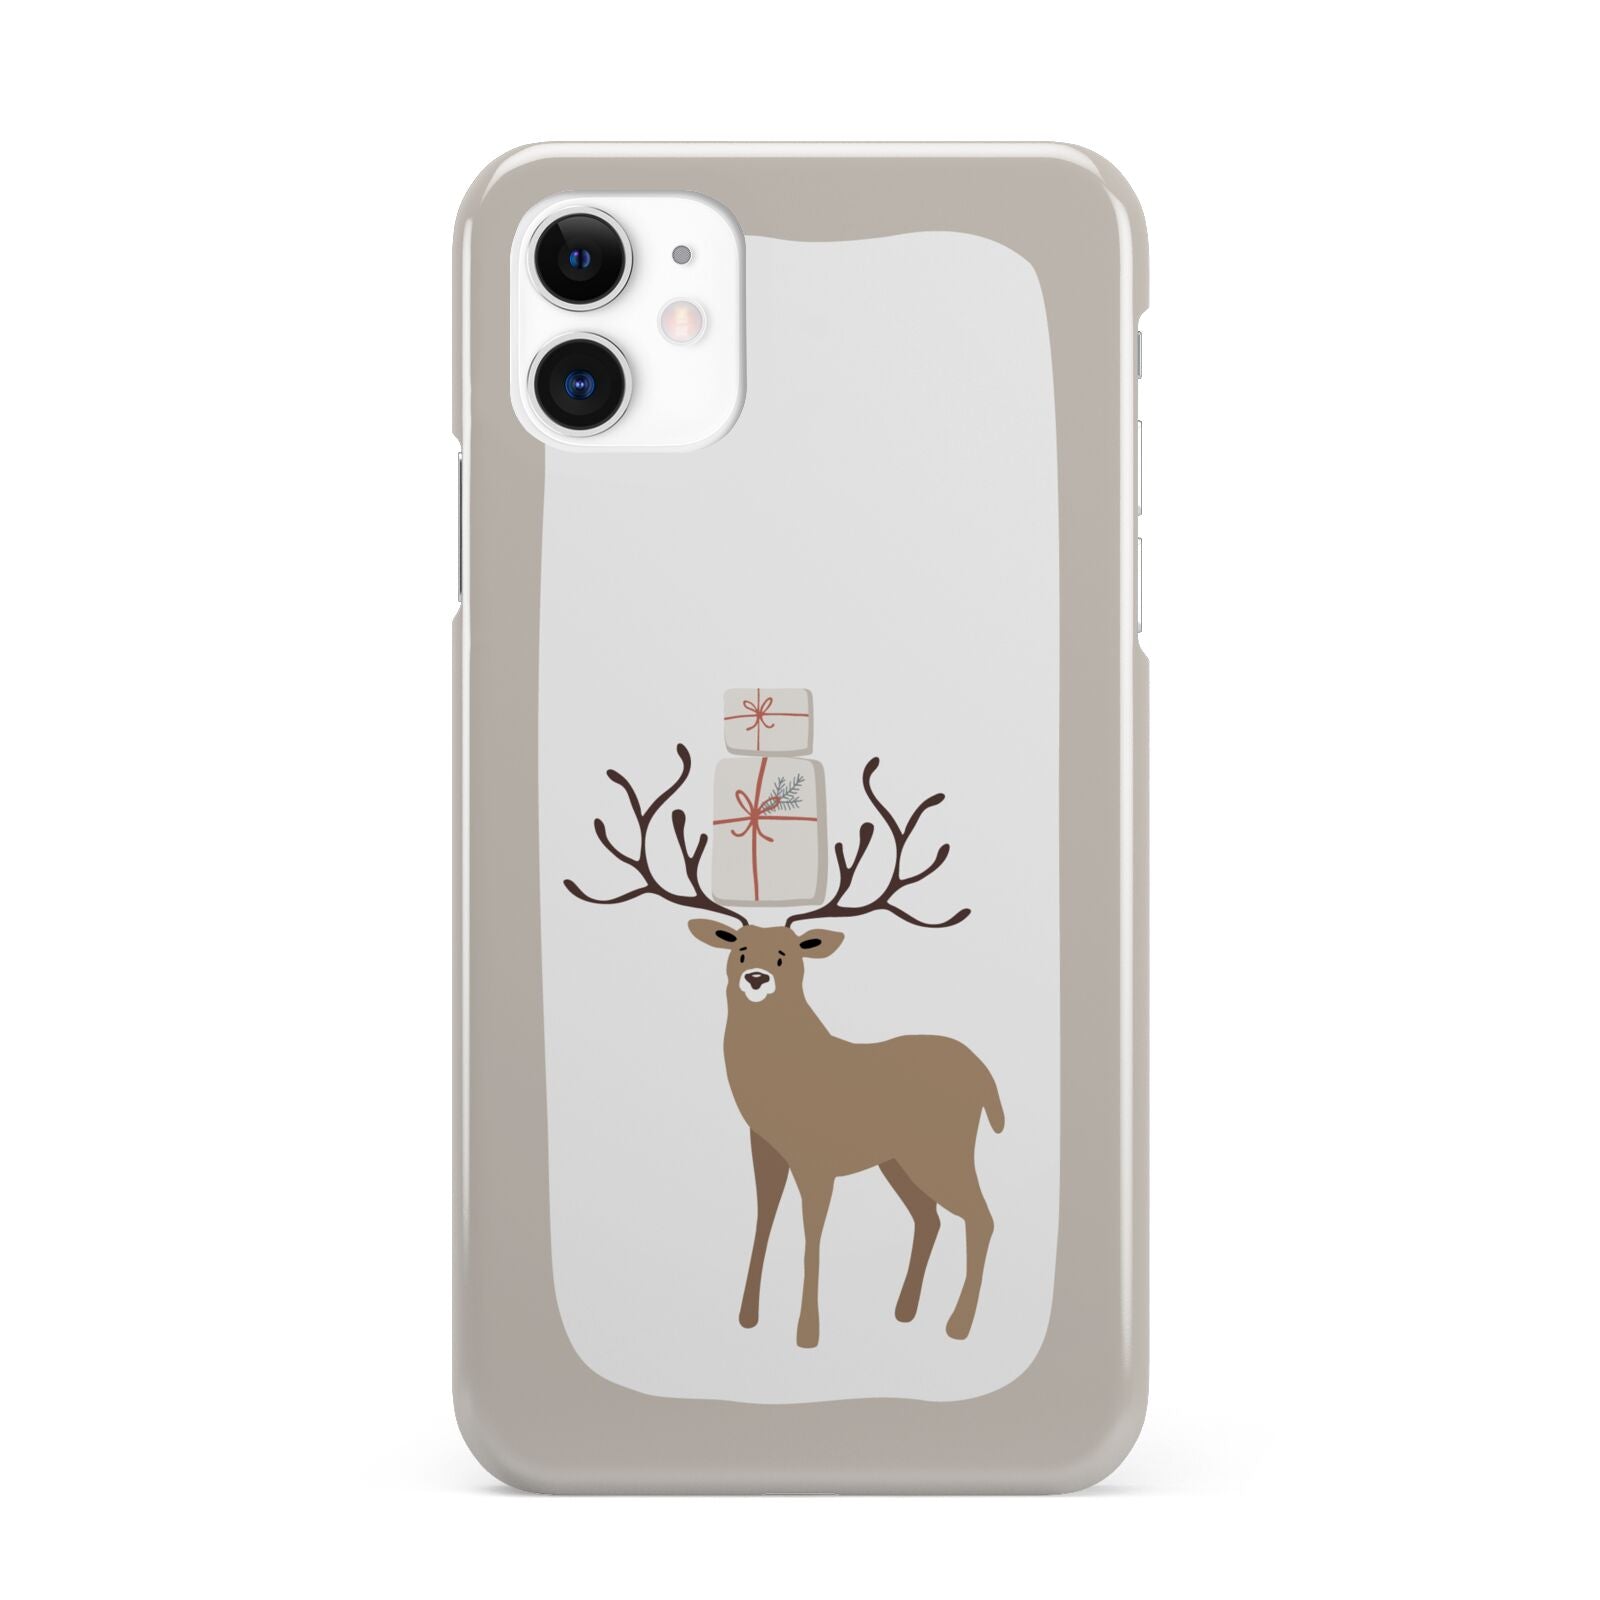 Reindeer Presents iPhone 11 3D Snap Case